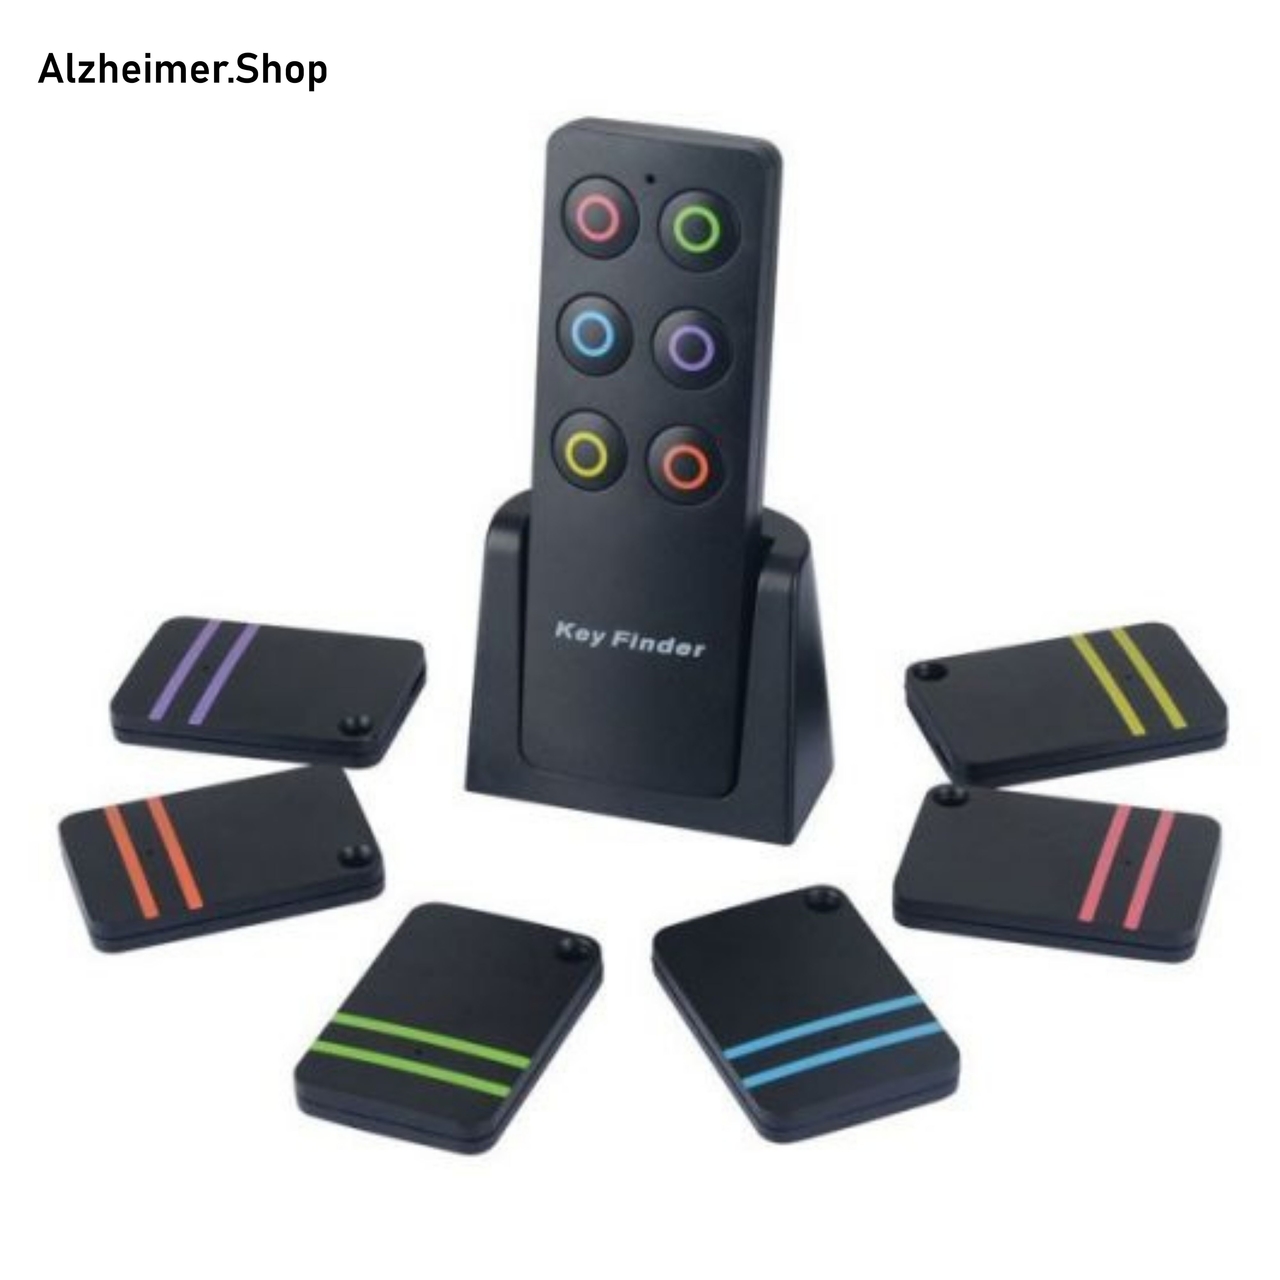 Golven voordelig Vooruitzicht Sleutelvinder voor ouderen met dementie - Alzheimer Shop